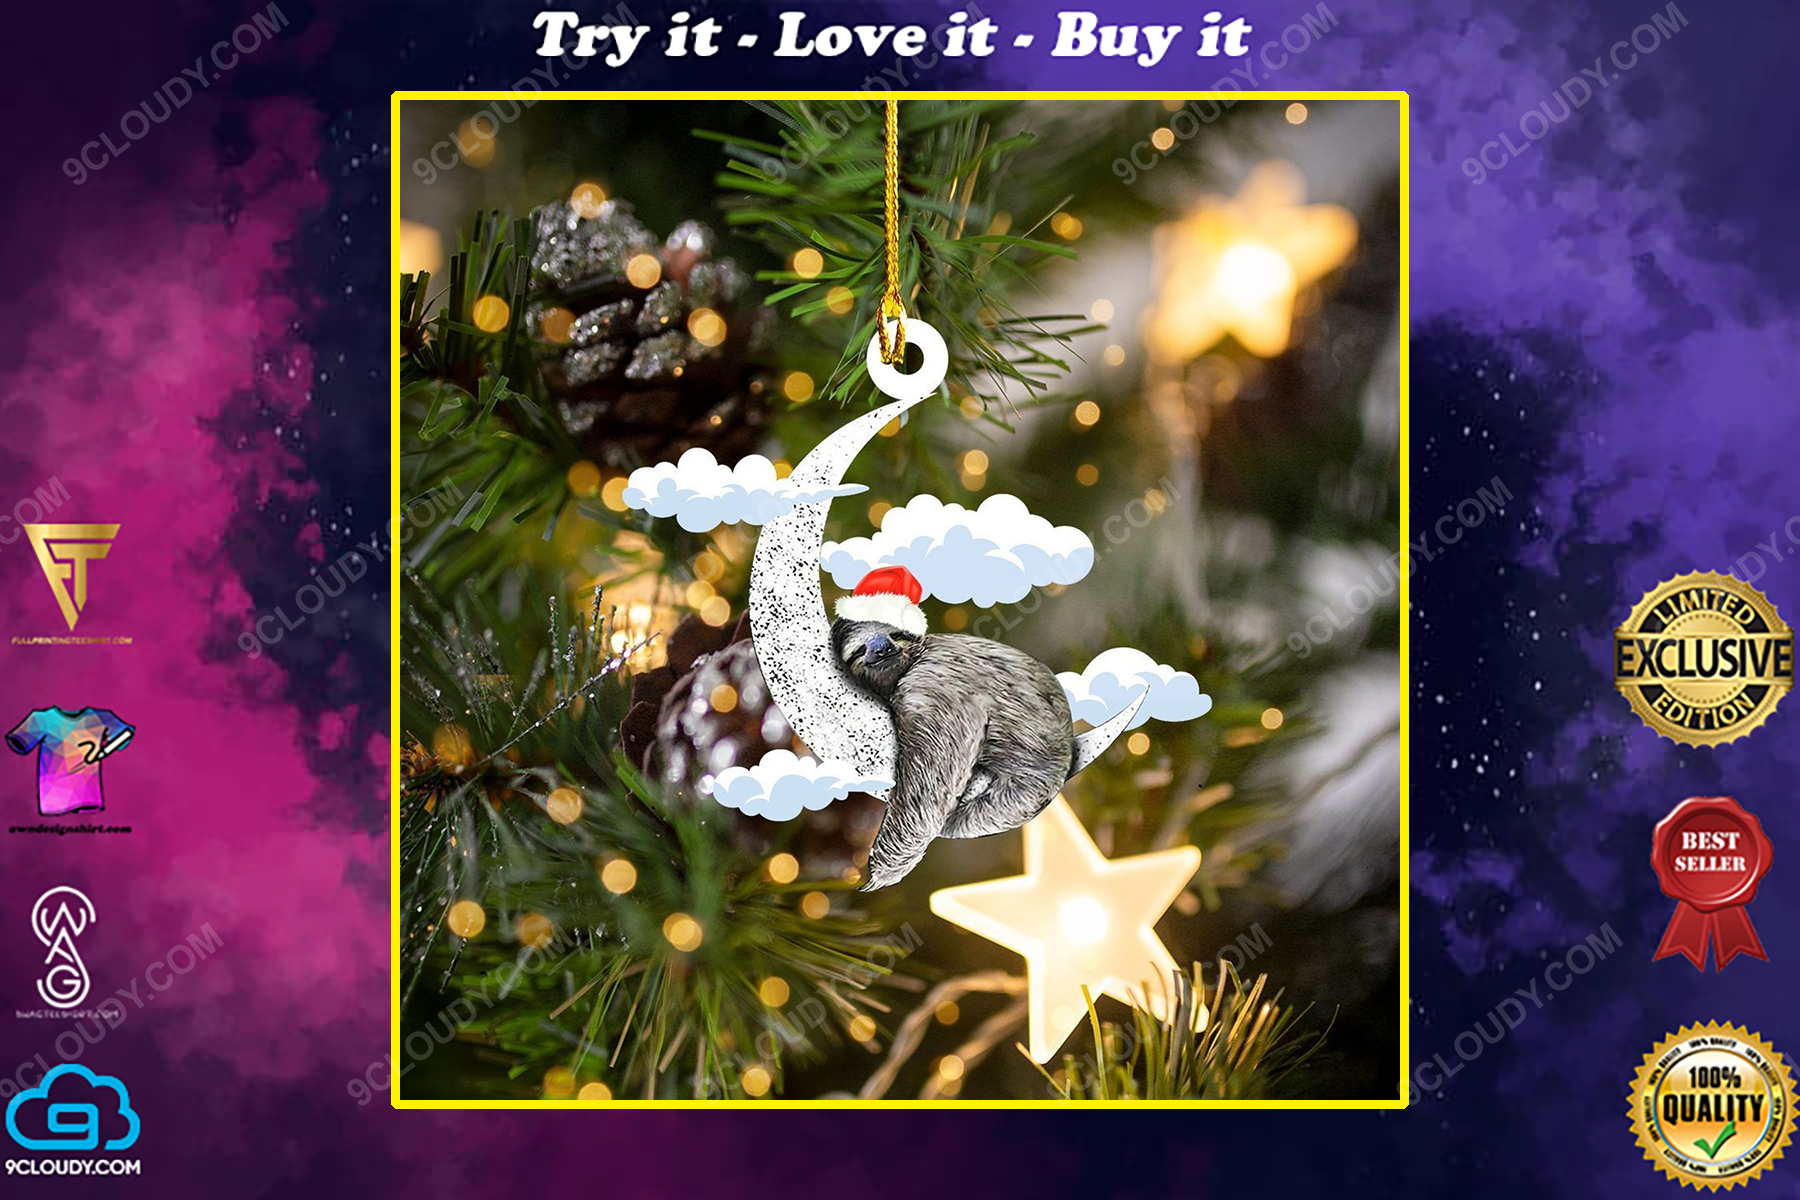 Sloth and moon christmas gift ornament